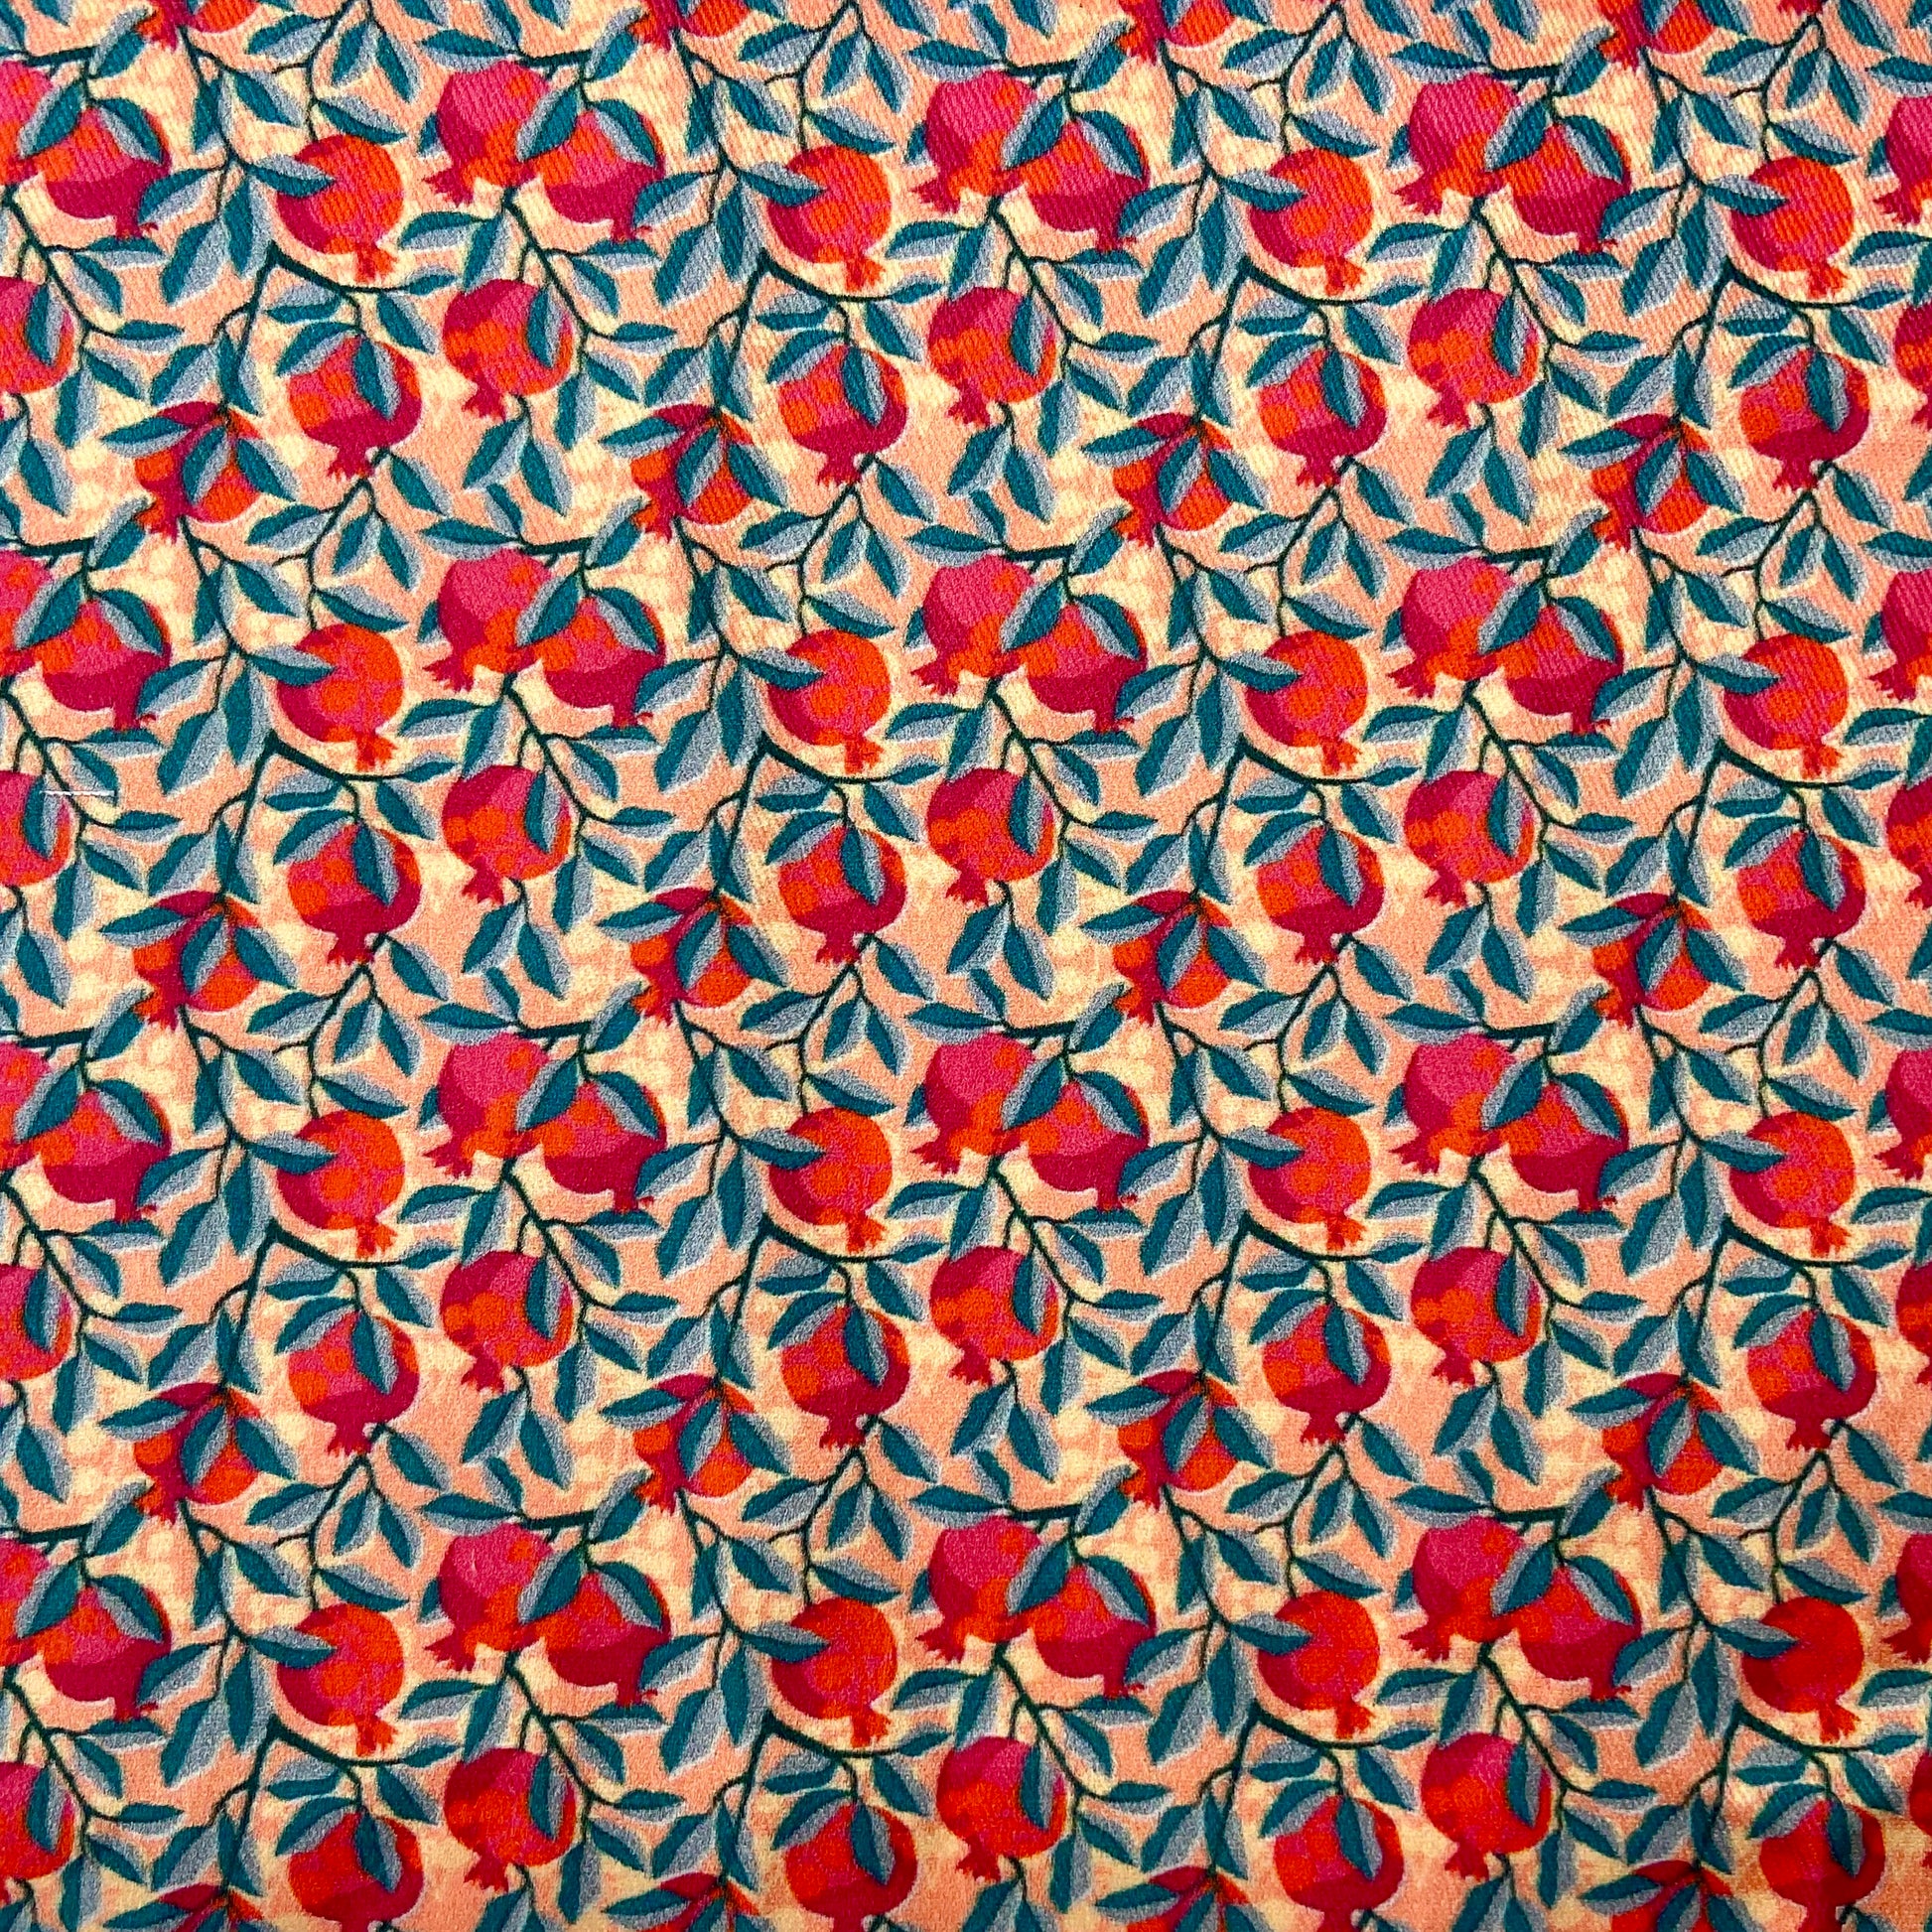 Sergé de coton imprimé motif grenades rouge orange et rose fuchsia sur fond corail feuilles bleues petits motifs adorables fleurs feuilles fruits gai coloré 